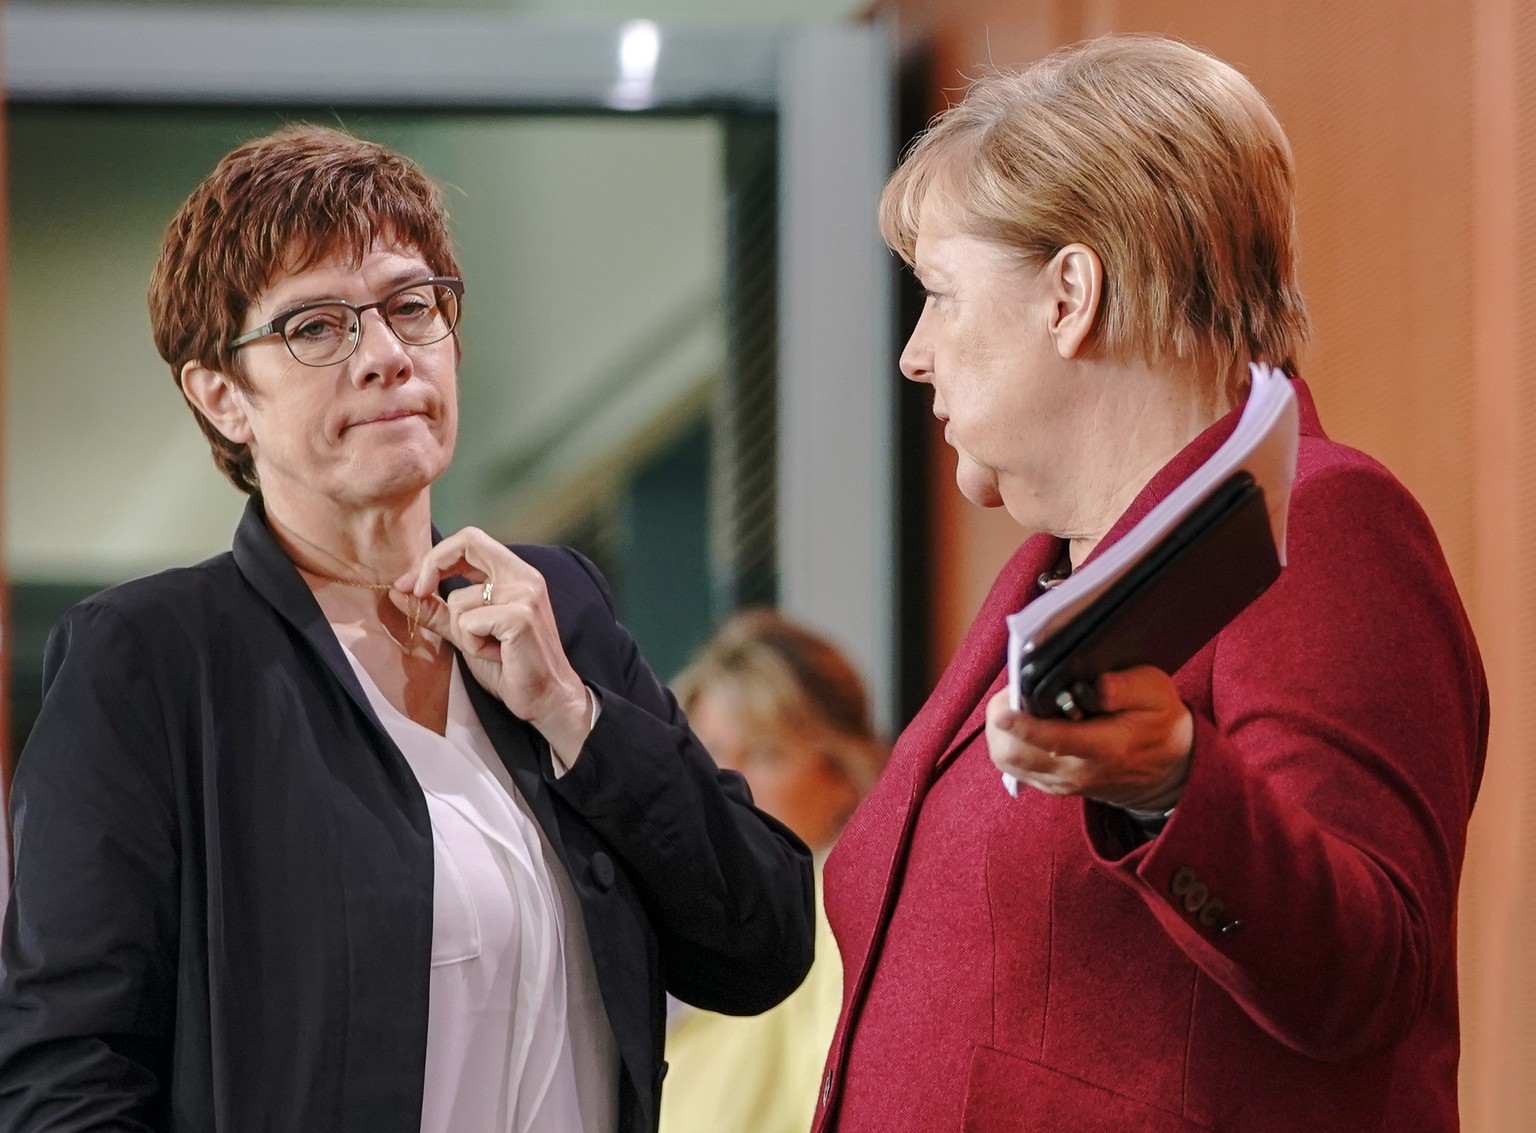 dpatopbilder - 09.10.2019, Berlin: Bundeskanzlerin Angela Merkel (CDU, r), spricht mit Annegret Kramp-Karrenbauer (CDU), Verteidigungsministerin, vor Beginn der Sitzung des Bundeskabinetts im Kanzlera ...